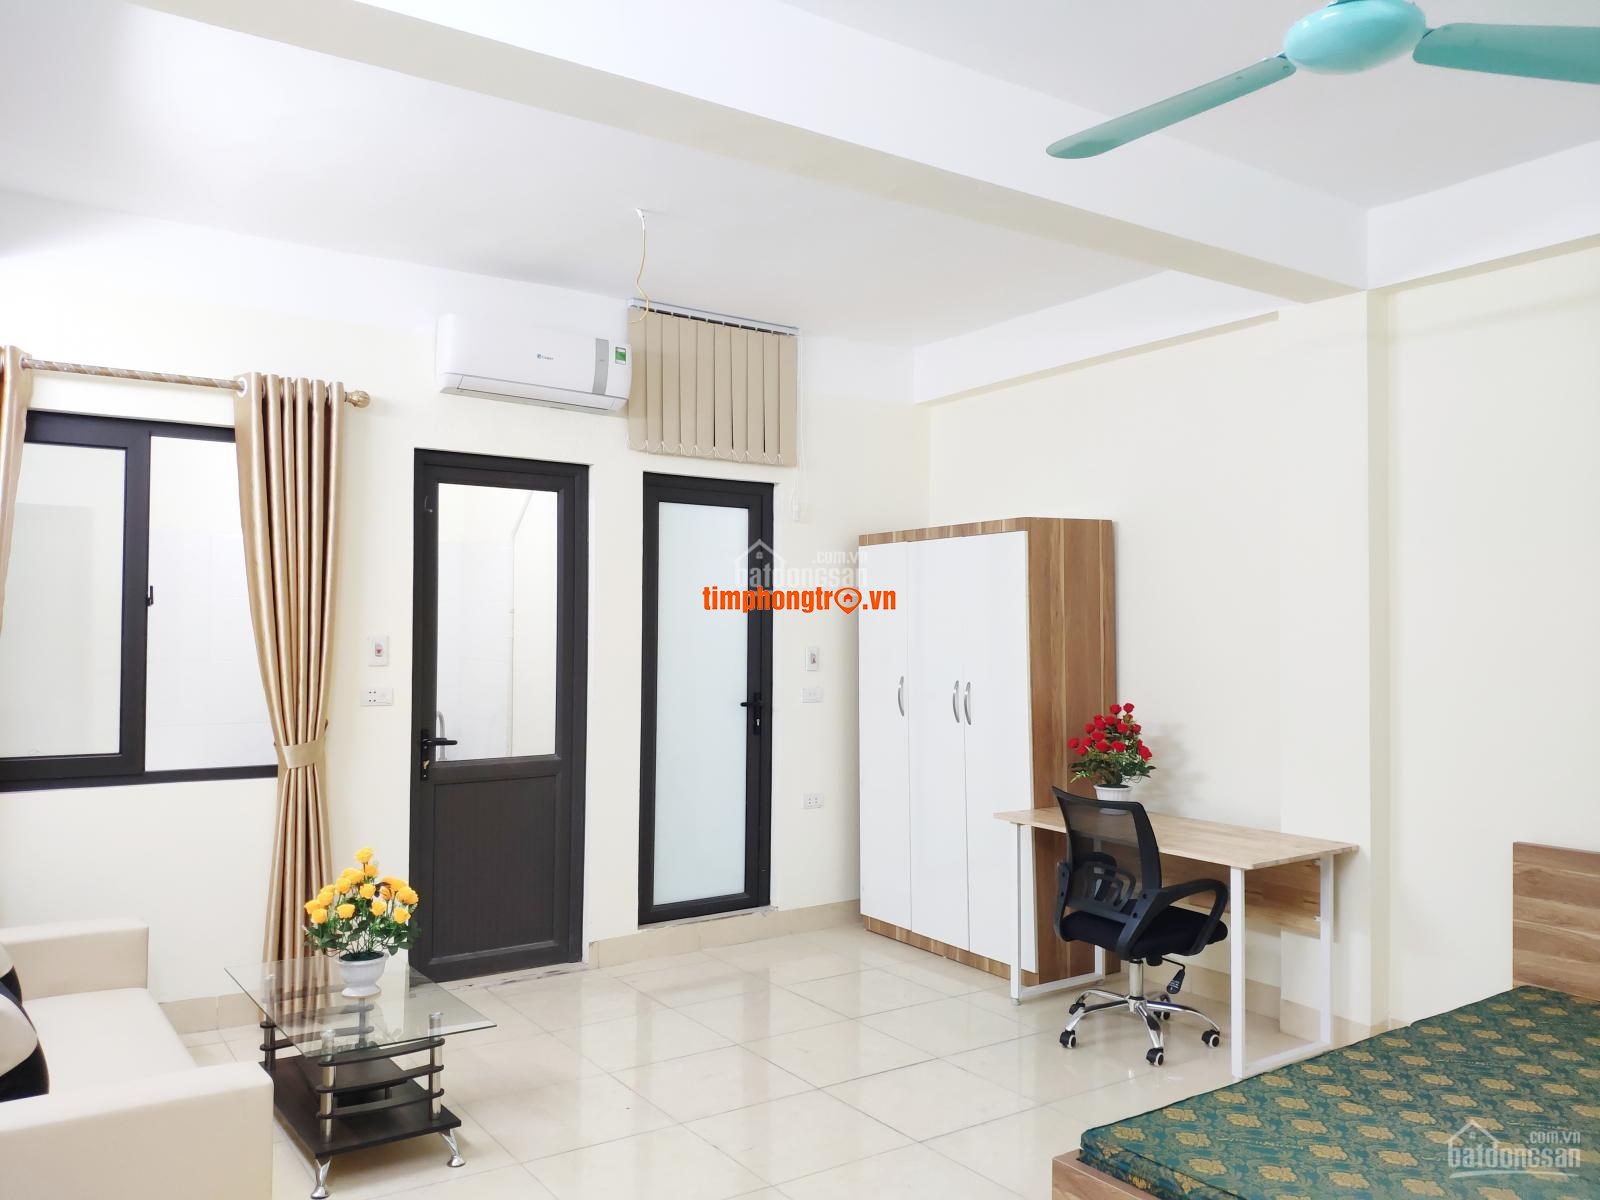 Cho thuê phòng trọ trung tâm Quận Phú Nhuận - Full nội thất - Giá chỉ 4tr/th (có ưu đãi thêm)